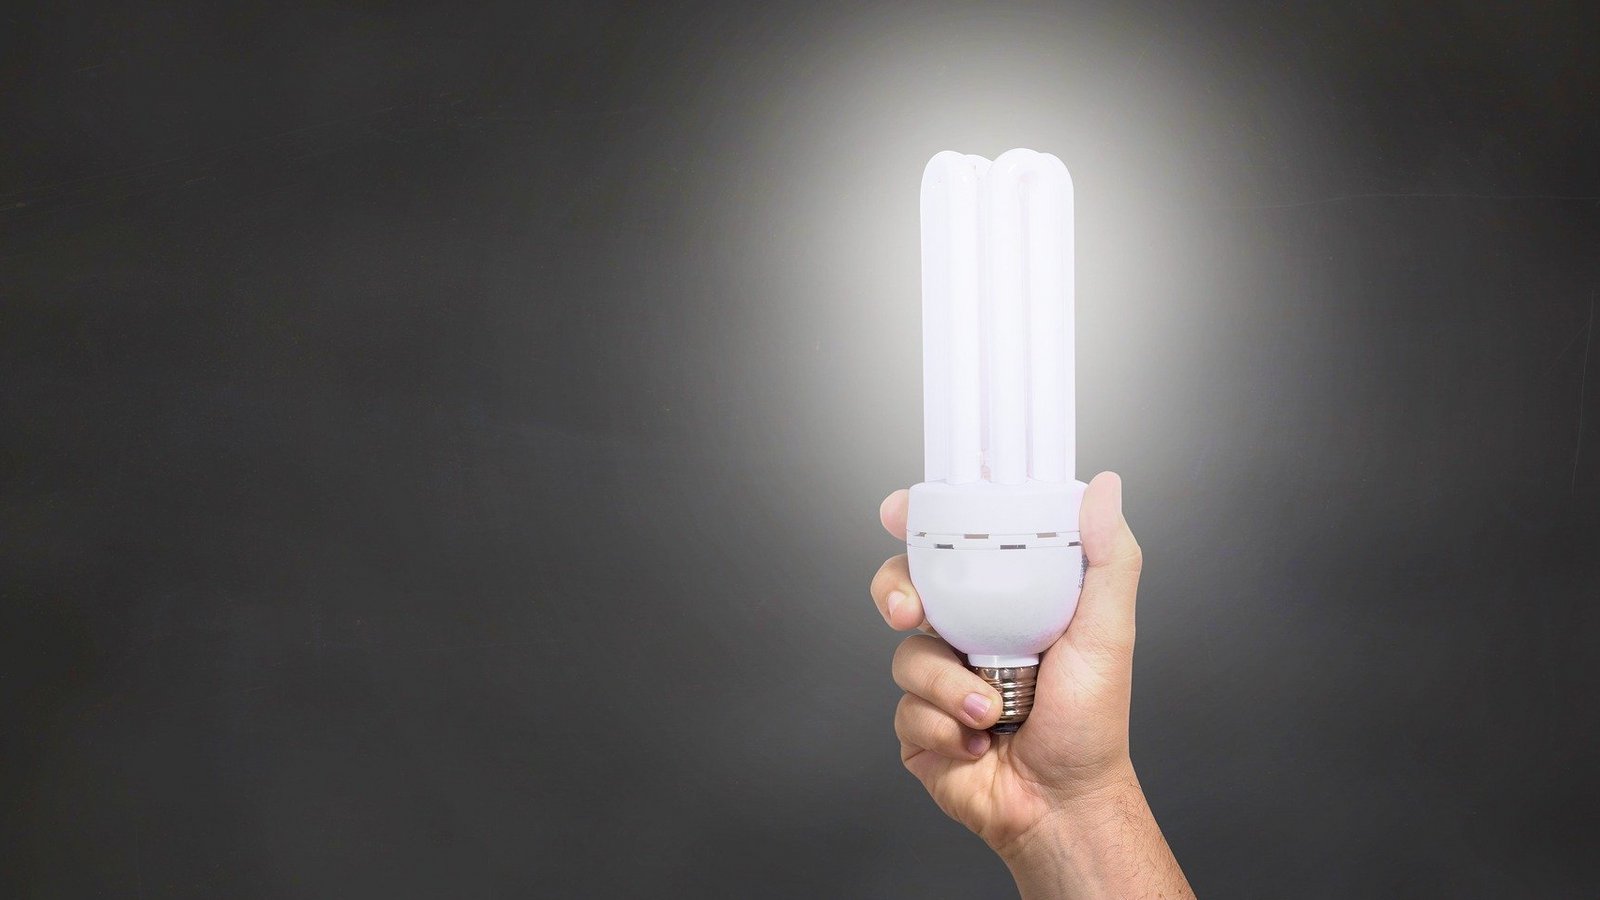 Ein Wechsel von Glühbirnen zu LEDs im gesamten Haushalt lohnt sich laut Energieberater schon nach kurzer Zeit. Foto: Reche/Pixabay